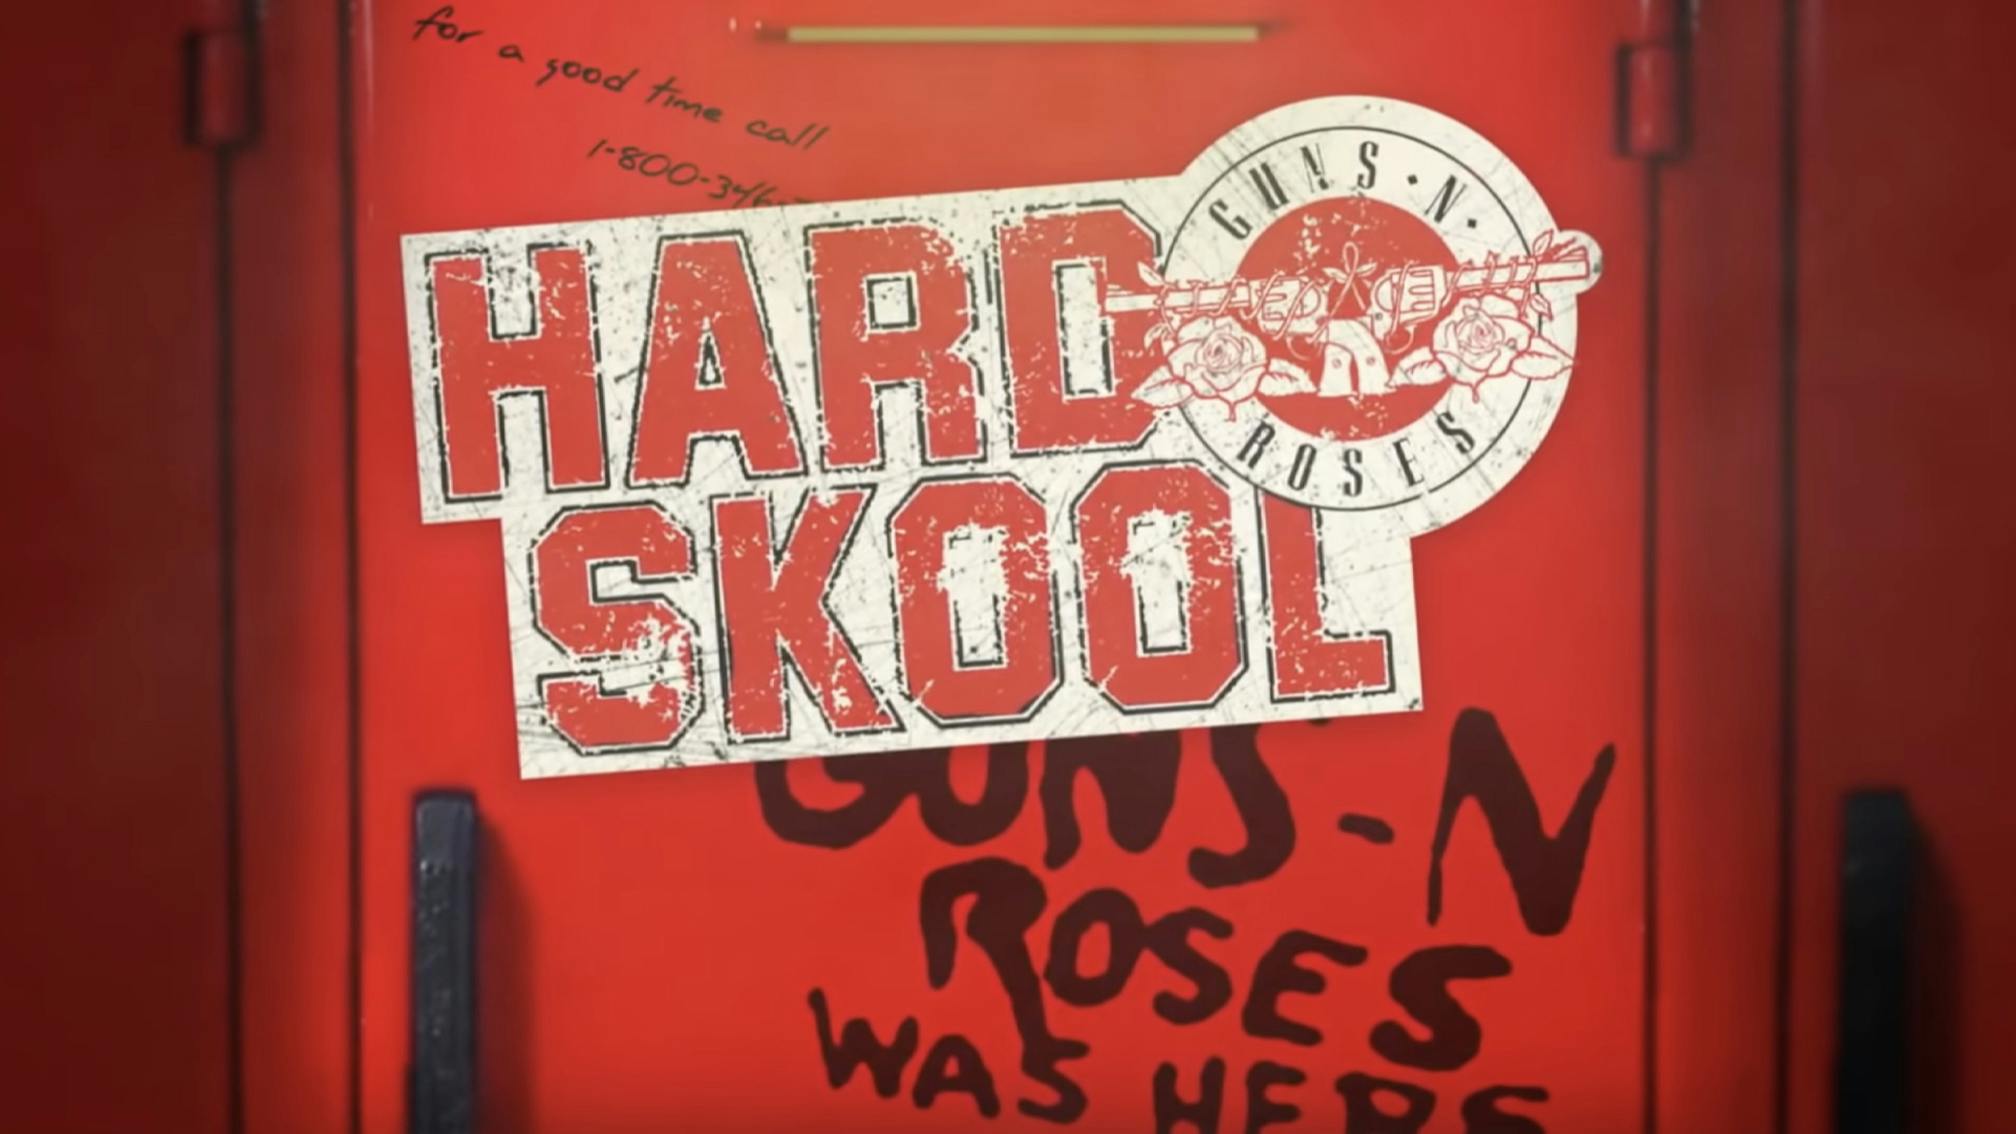 Listen to Guns N' Roses' energetic new song, Hard Skool